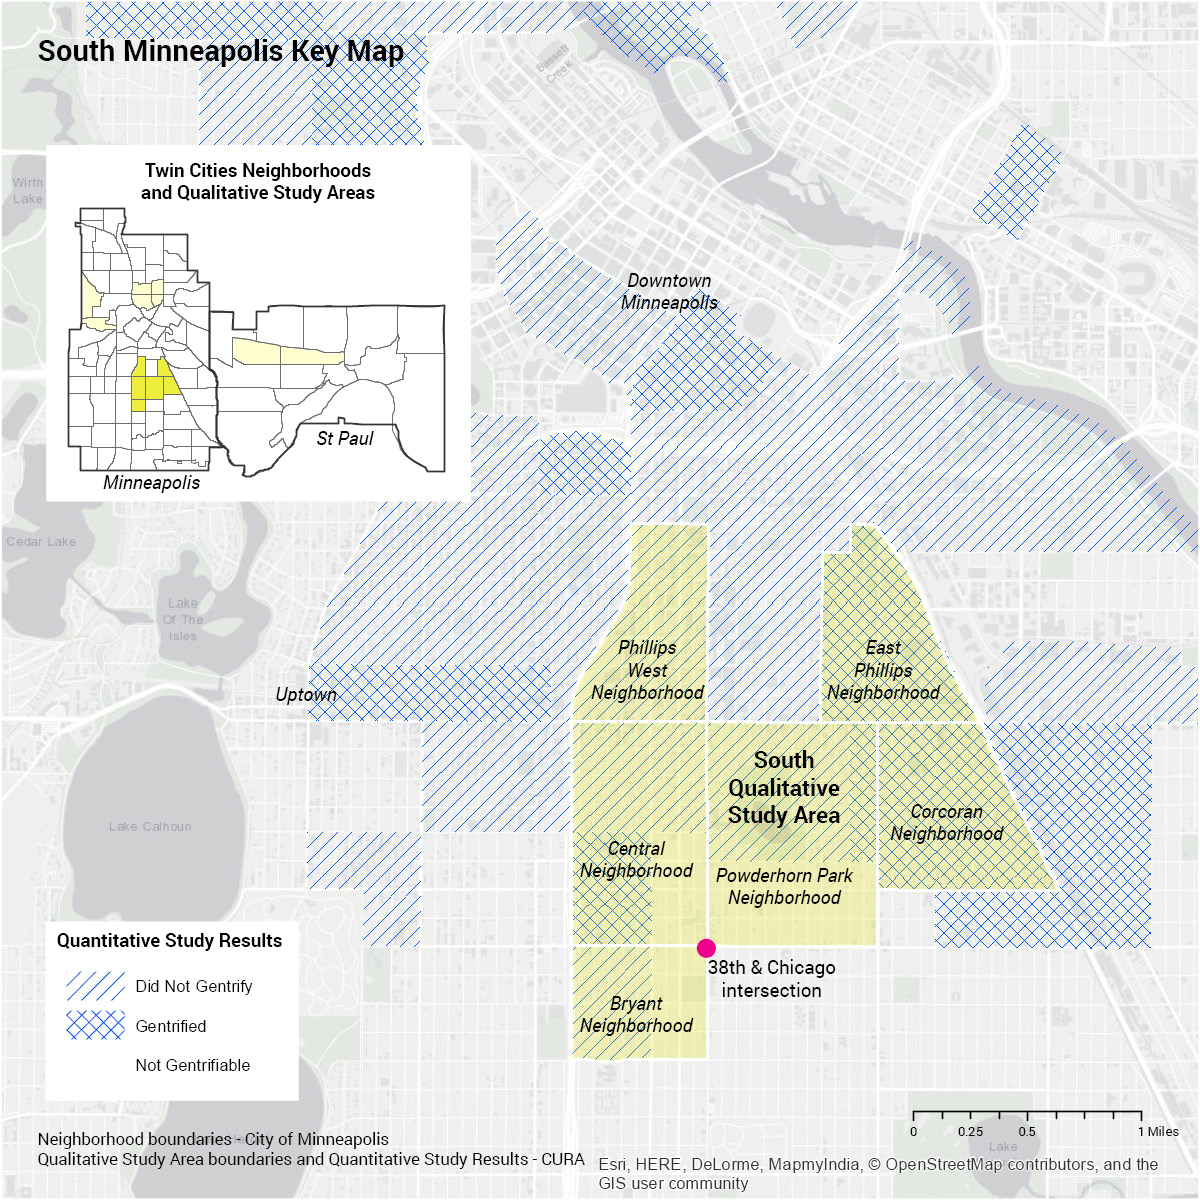 South Minneapolis Key Map